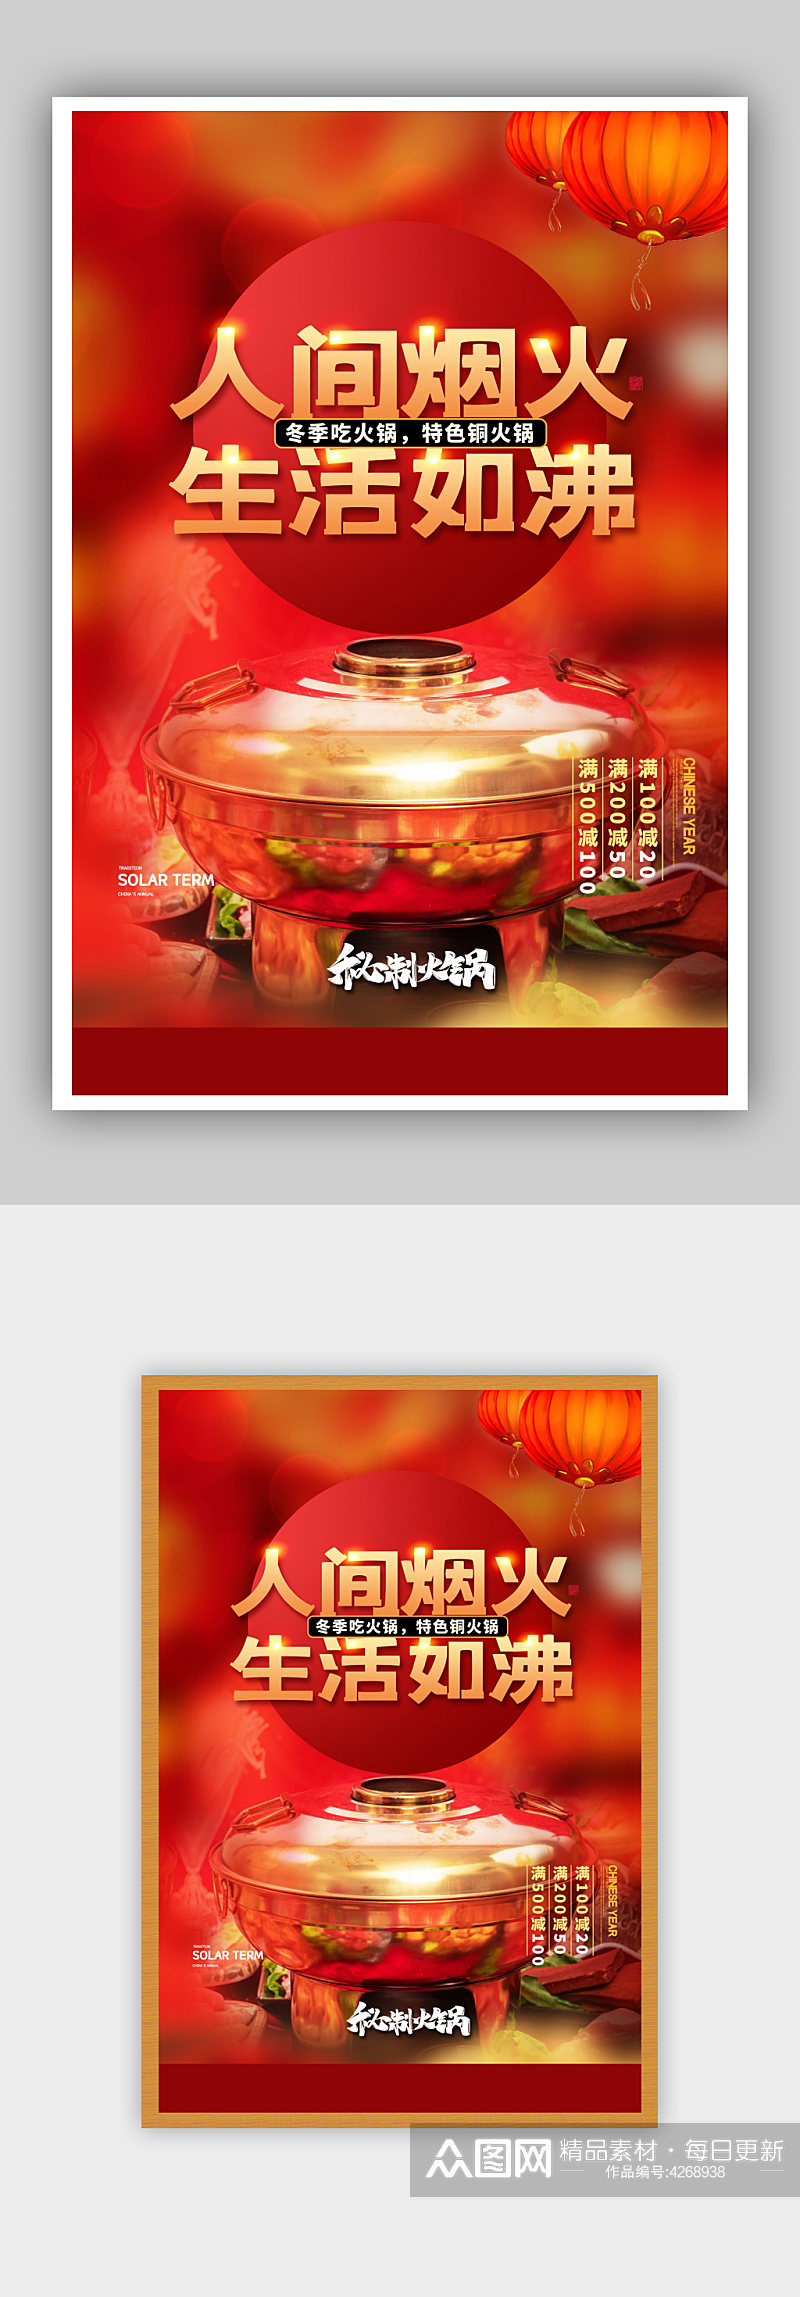 简约红色喜庆餐饮美食火锅促销活动海报素材